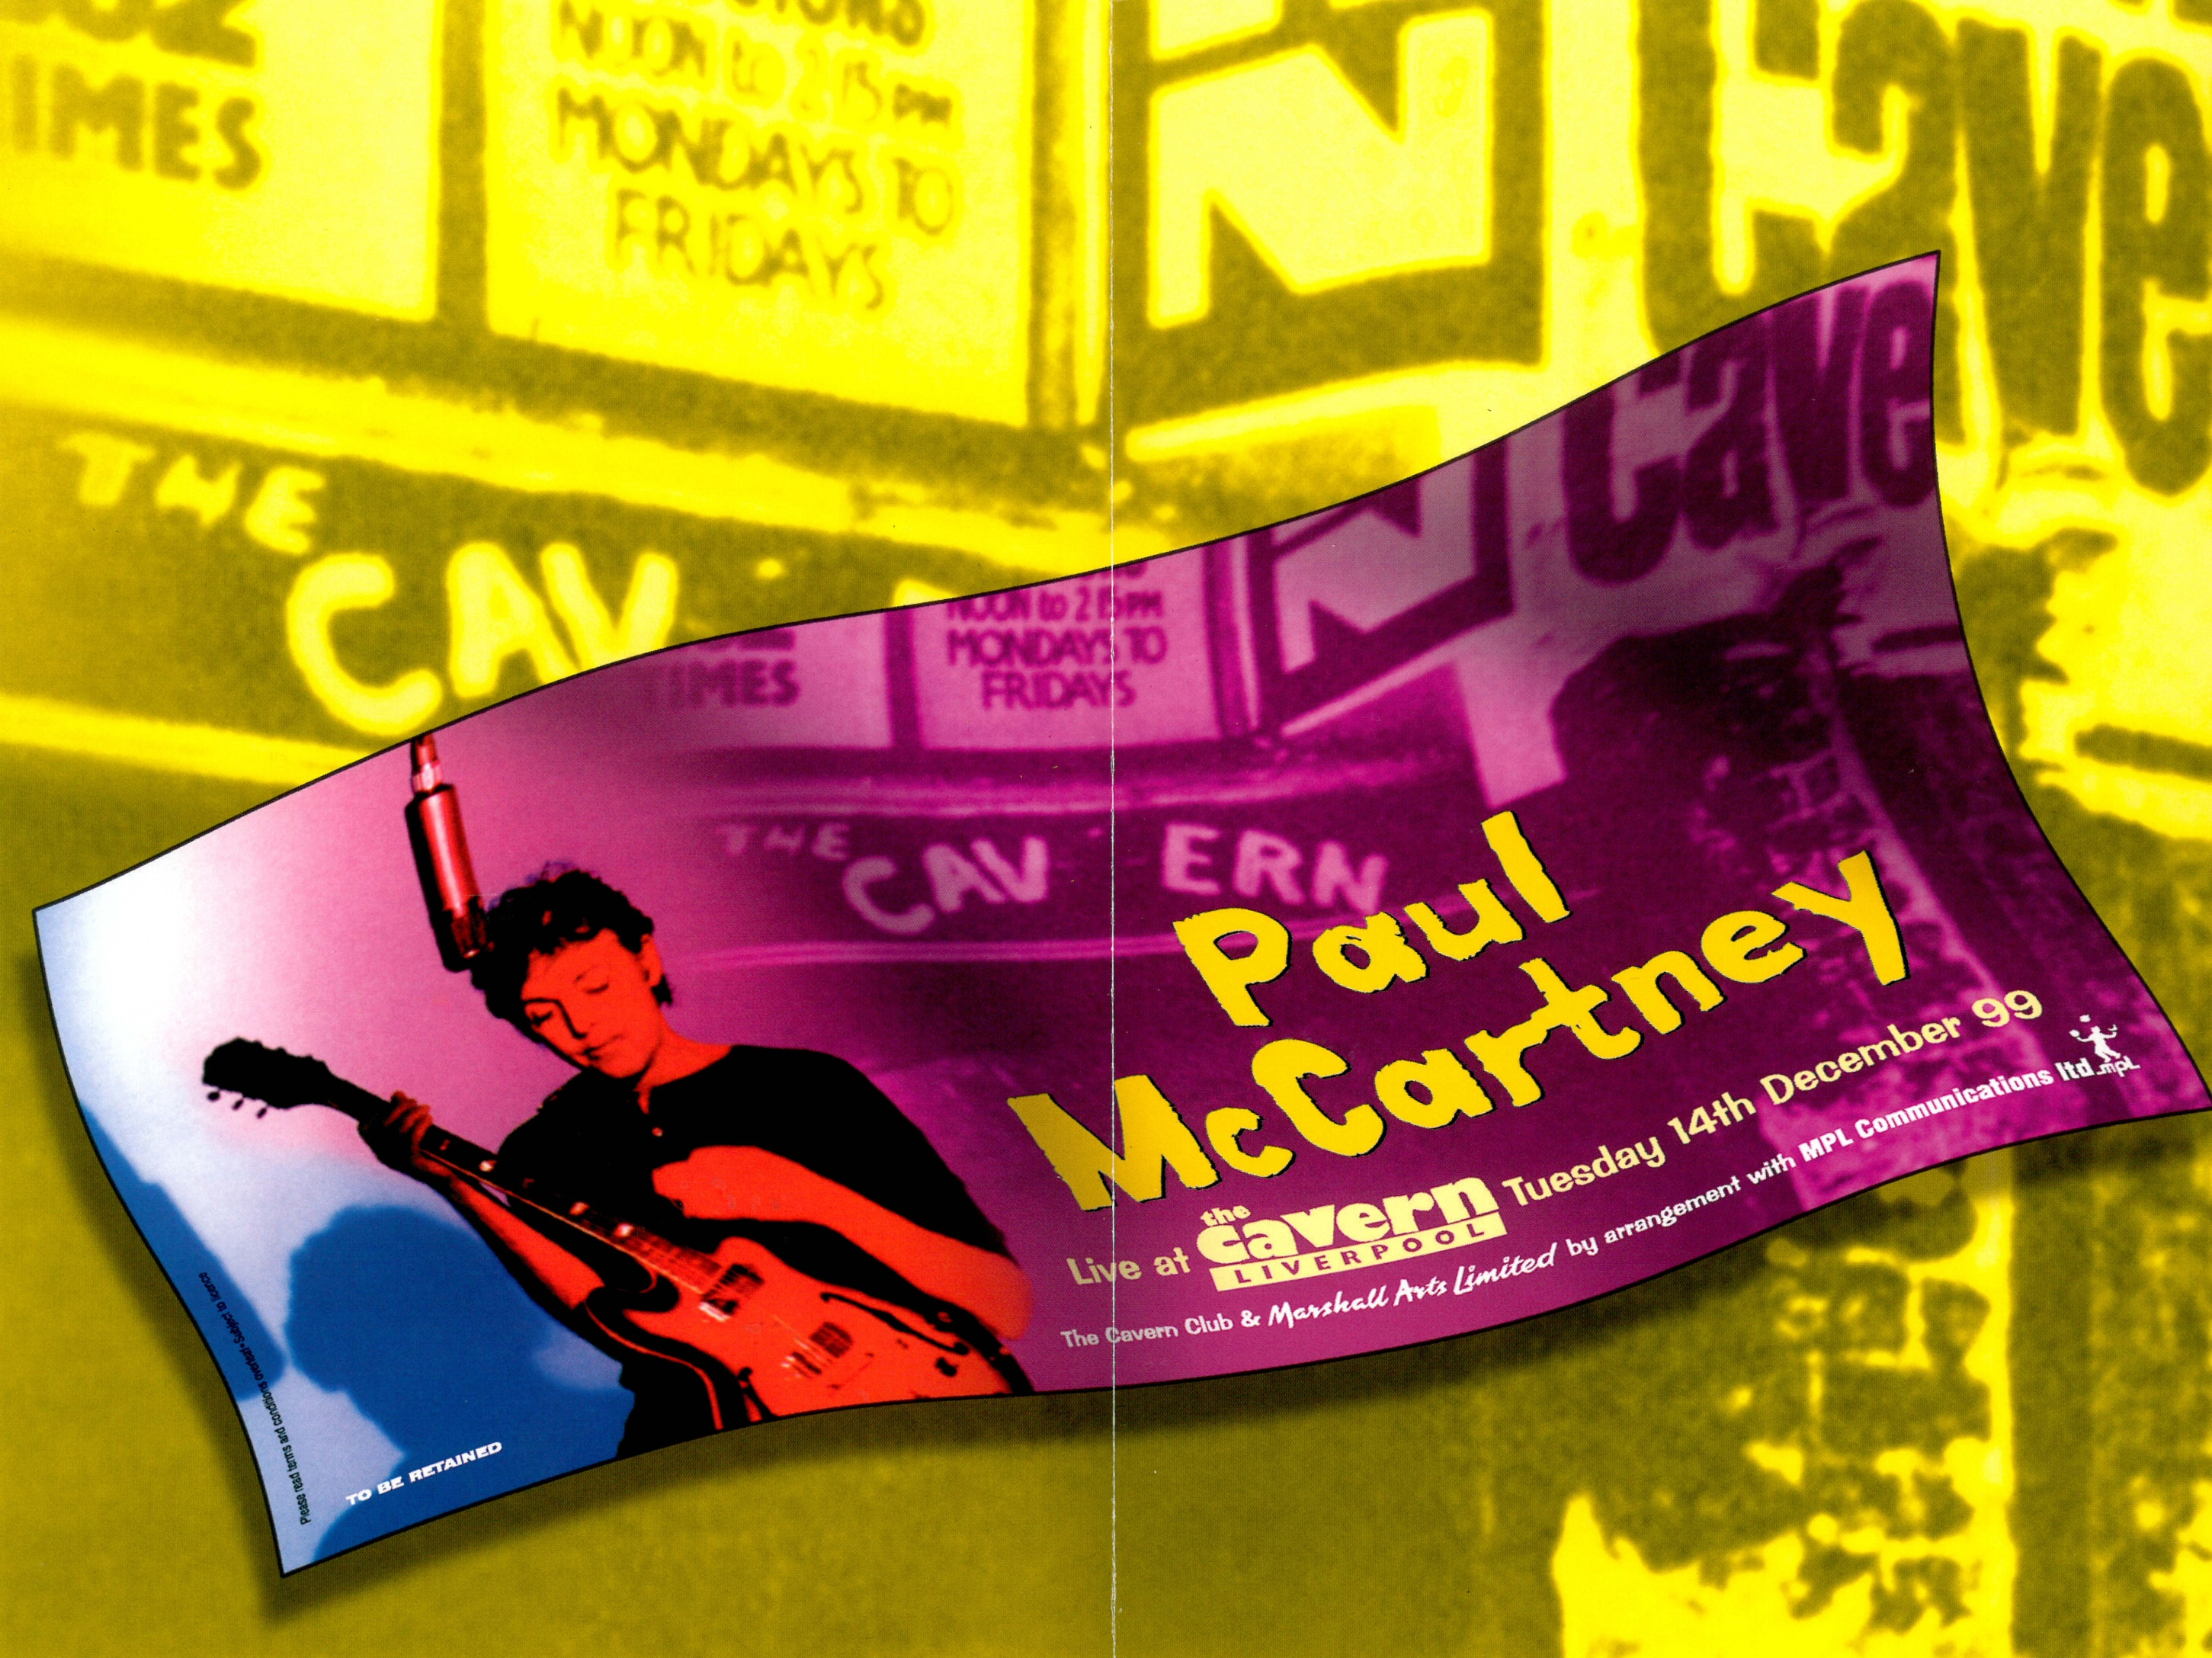 Paul mccartney live. Paul MCCARTNEY 1999. Paul MCCARTNEY Live at the Cavern Club 1999. Paul MCCARTNEY - Live at the Cavern. Paul MCCARTNEY album Cover.